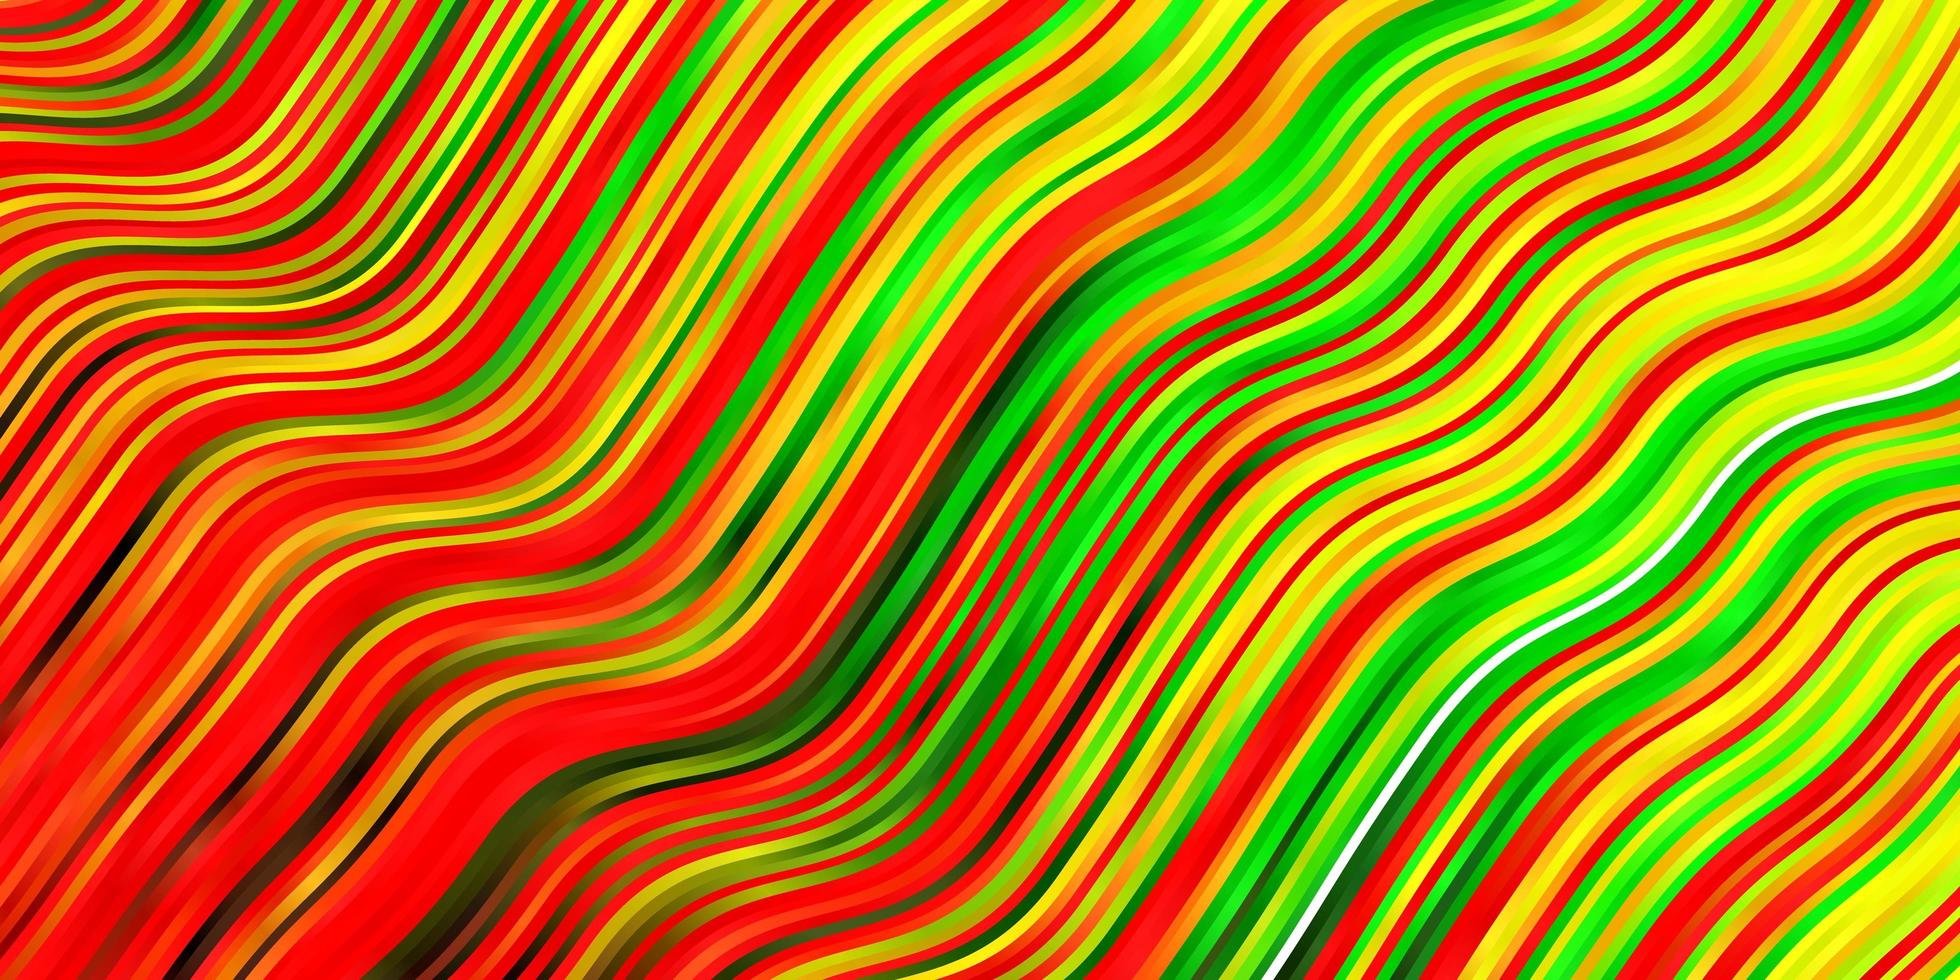 padrão multicolor com linhas irônicas. vetor